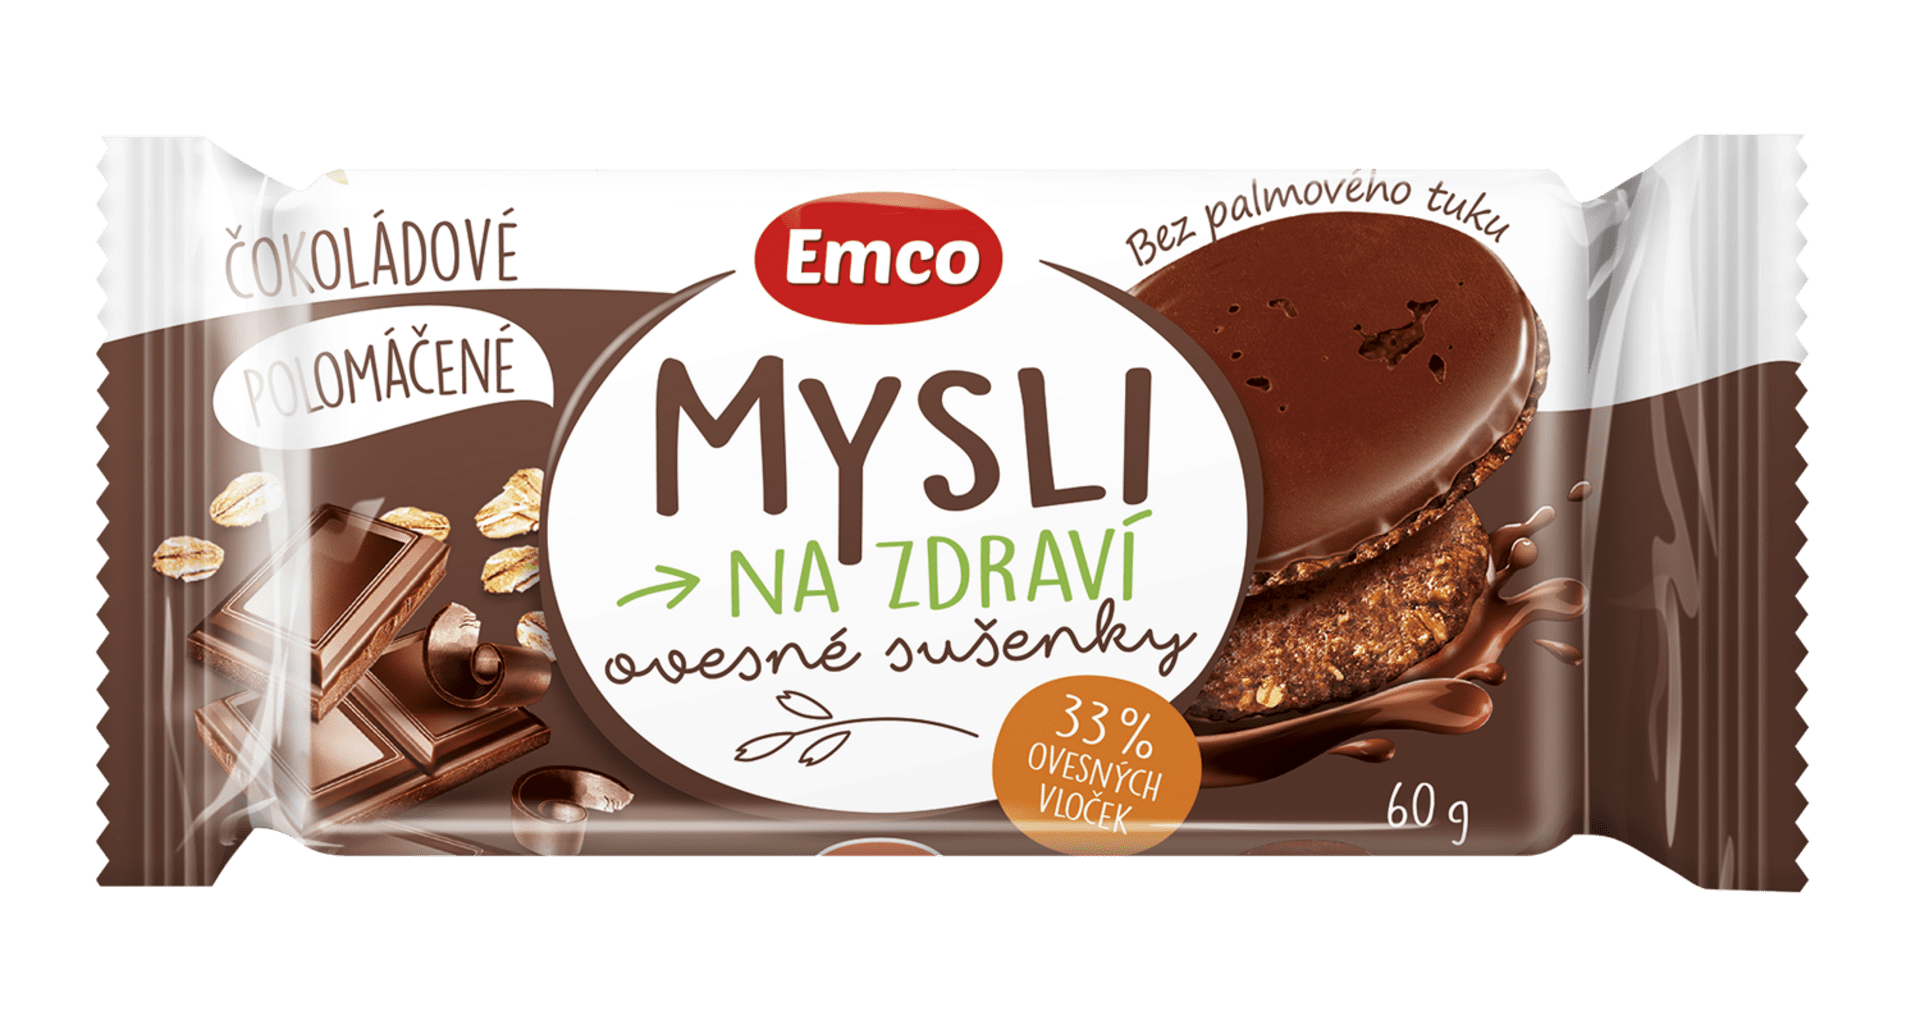 Emco Mysli Ovesné sušenky polomáčené čokoladové 60 g